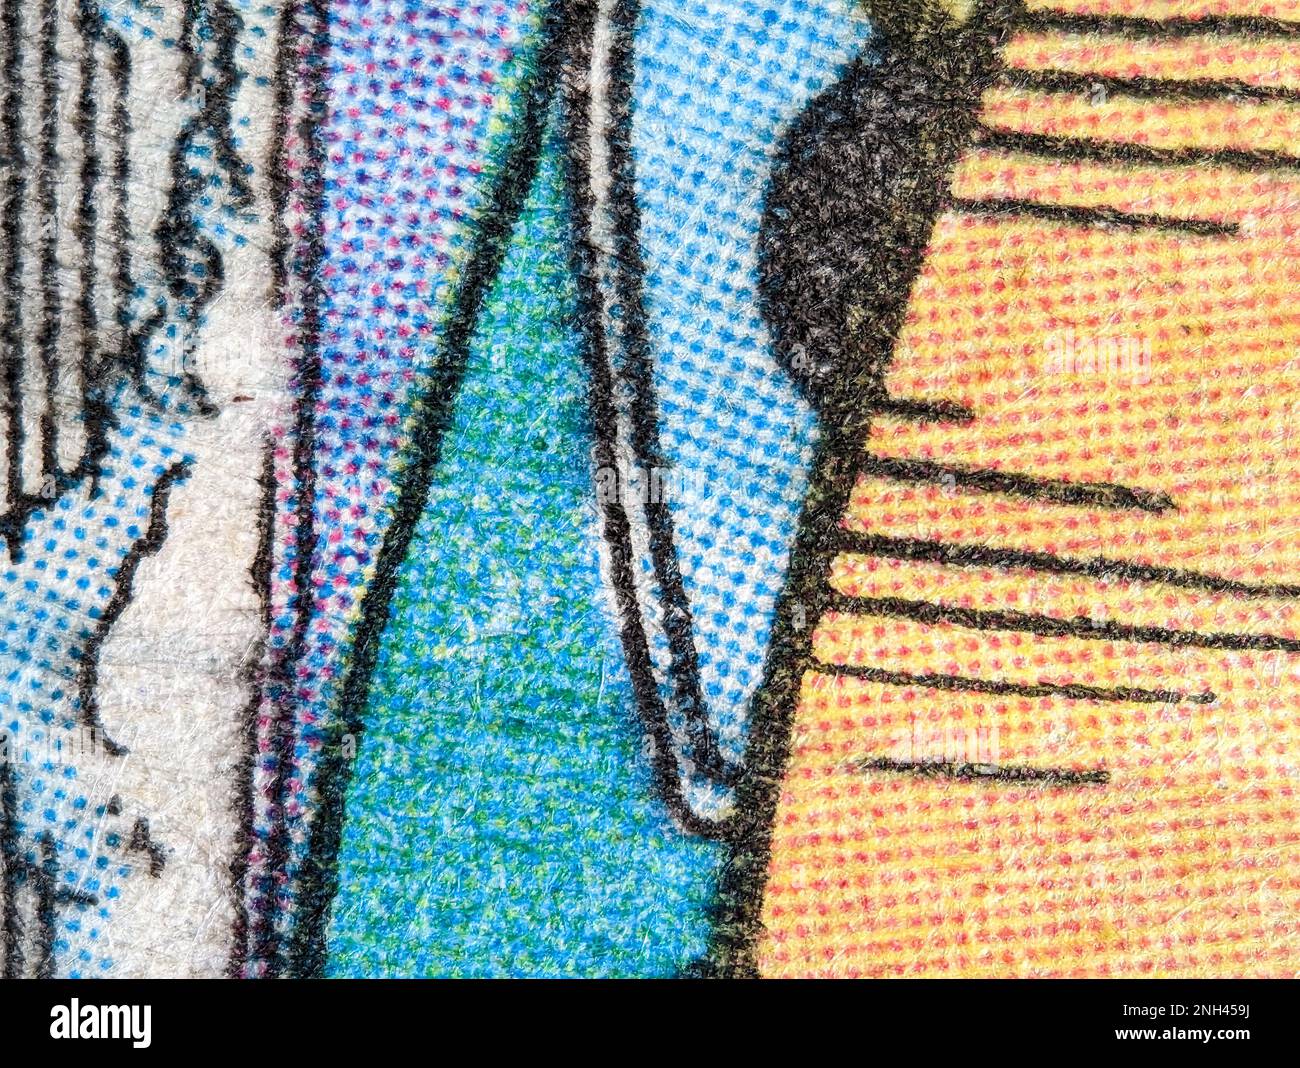 Vue en gros plan du motif d'impression de points sur une ancienne page de bande dessinée avec fond texturé coloré de formes abstraites Banque D'Images